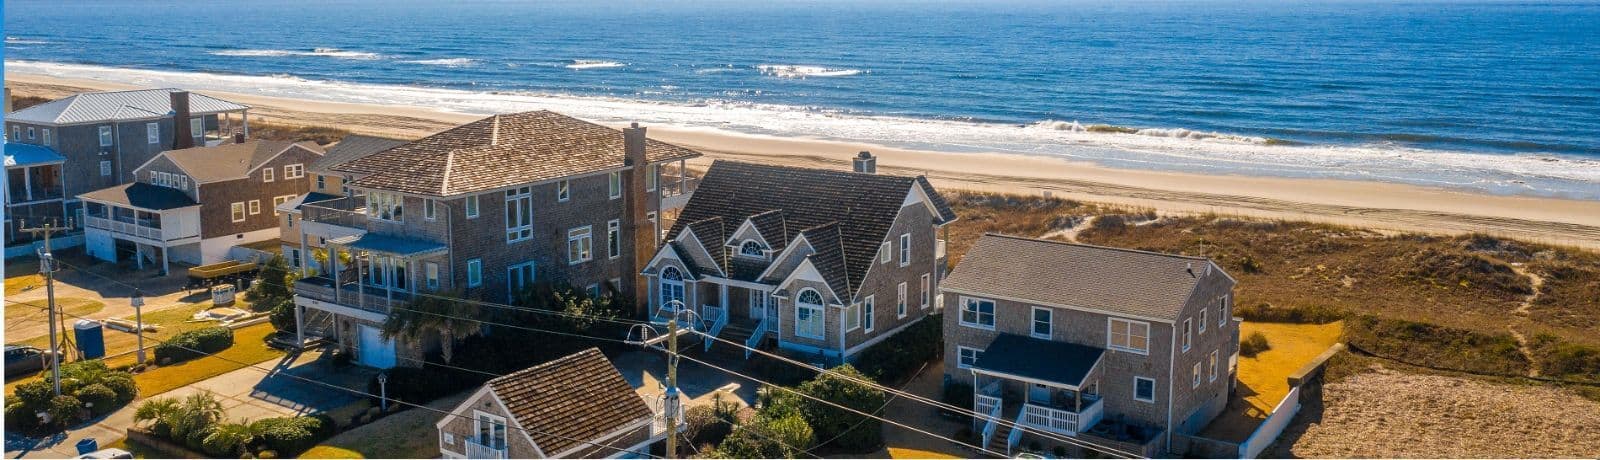 Ocean Ridge Collection | Spectrum Rental Properties | Atlantic Beach, NC